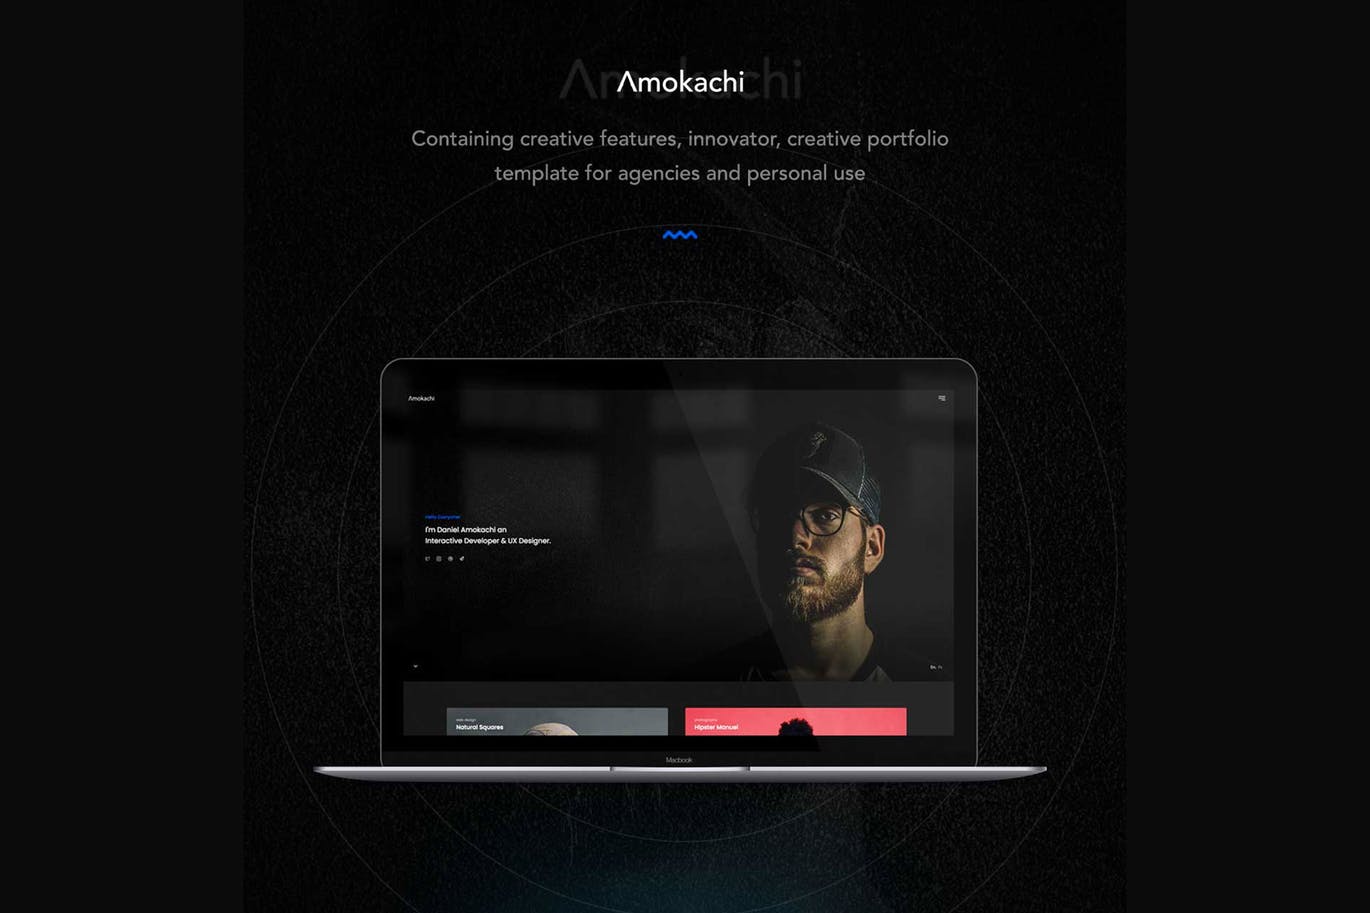 创意设计代理公司/工作室网站设计HTML模板第一素材精选 Amokachi – Creative Portfolio HTML Template插图